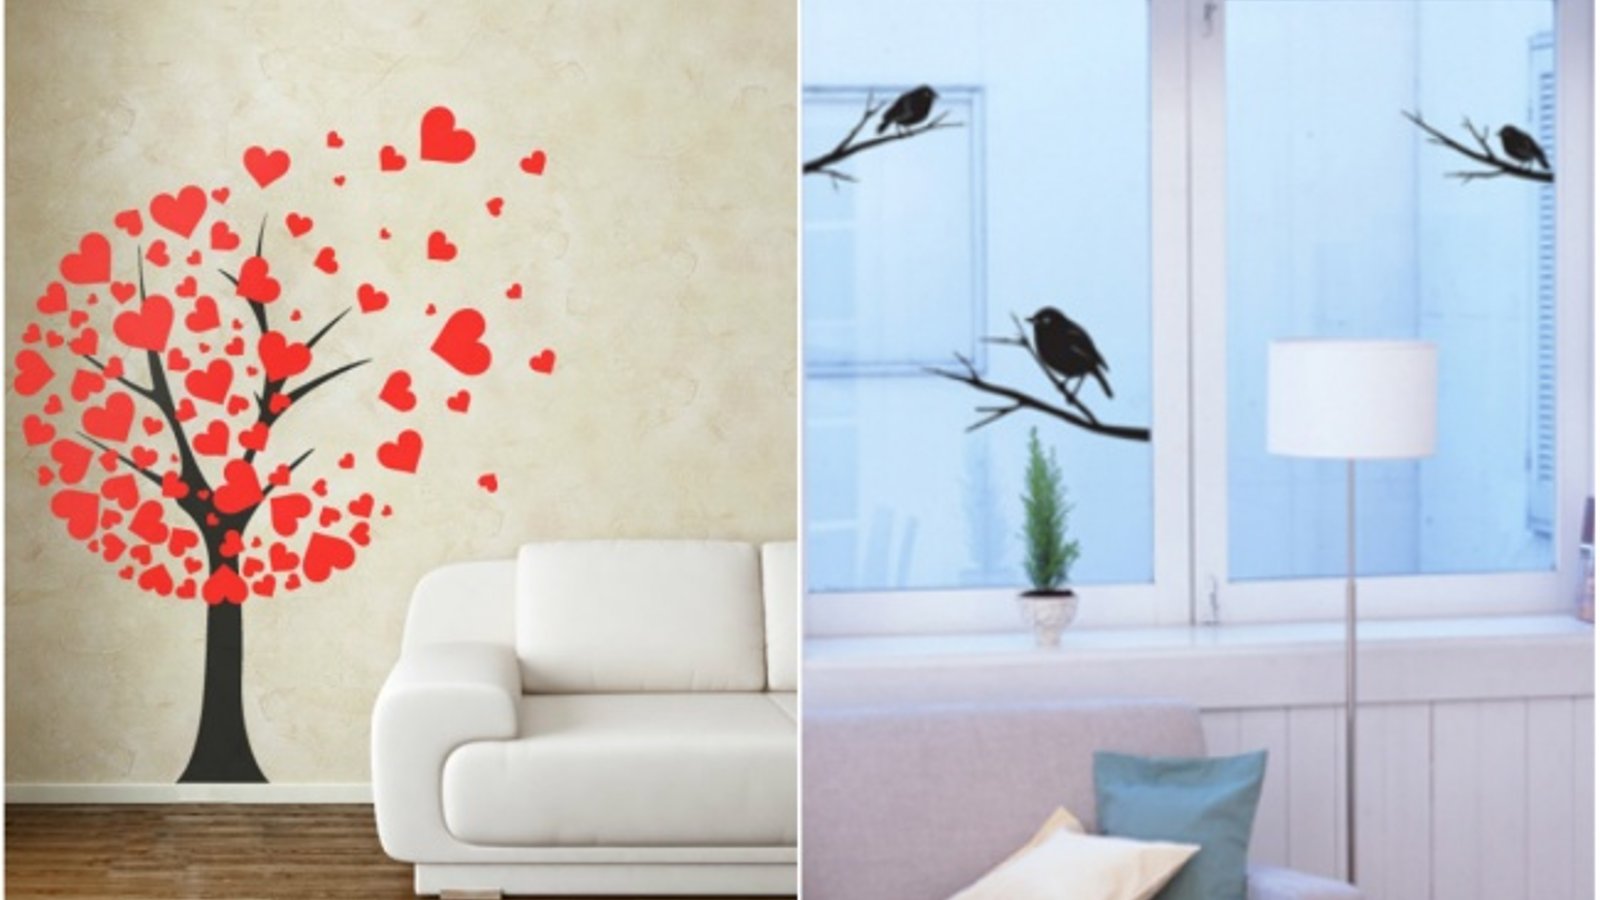 18 façons peu coûteuses de décorer votre appartement avec originalité!